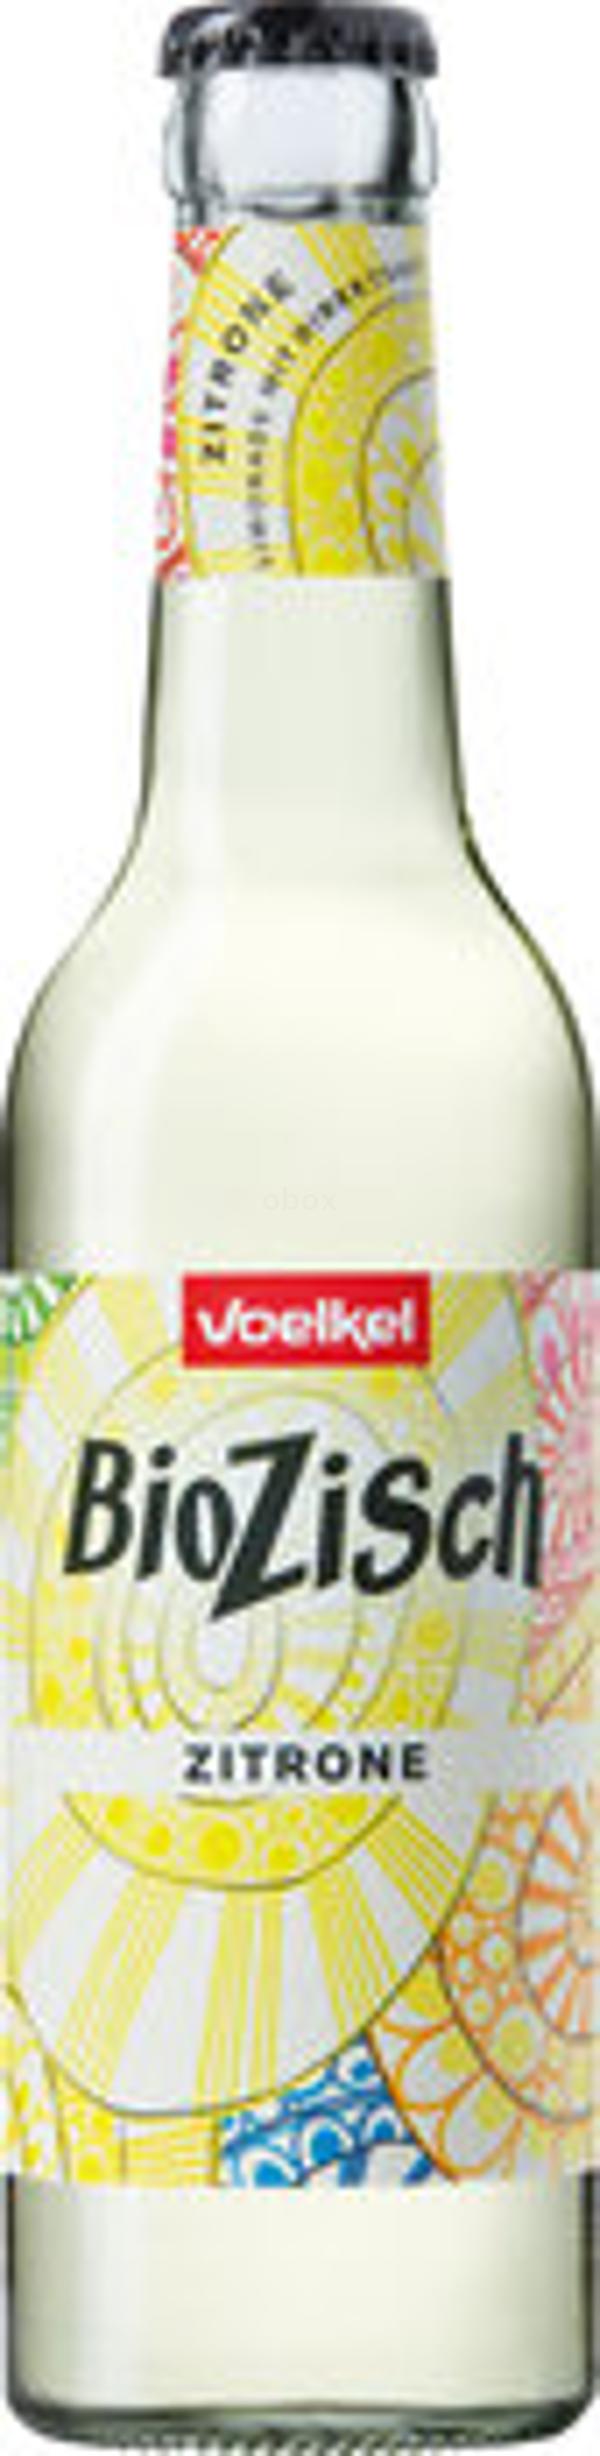 Produktfoto zu BioZisch Zitrone, 0,33 l